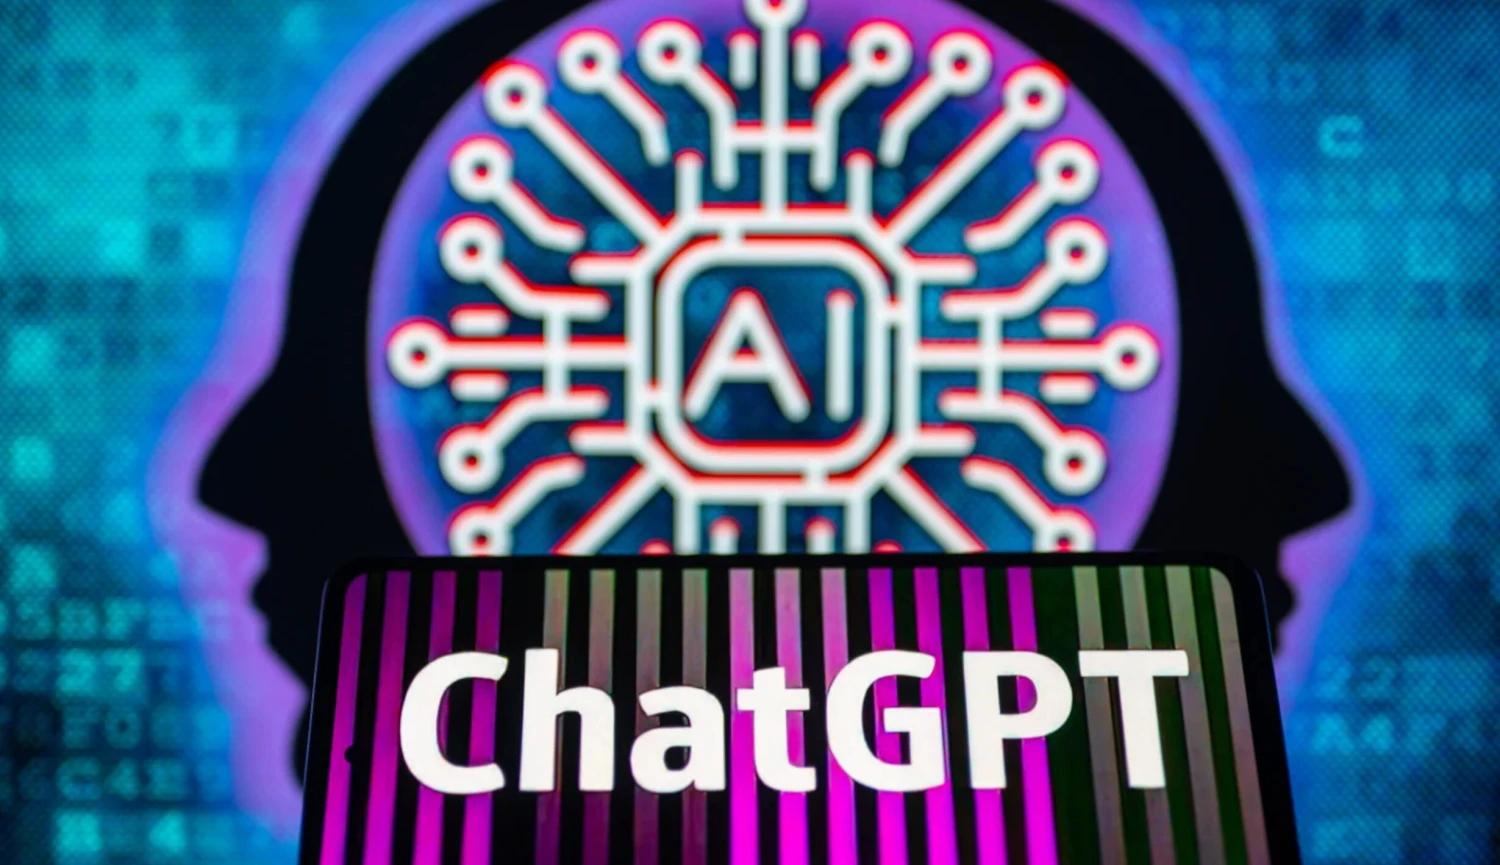 ChatGPT už umí projíždět web. Tady je vše, co k tomu potřebujete vědět